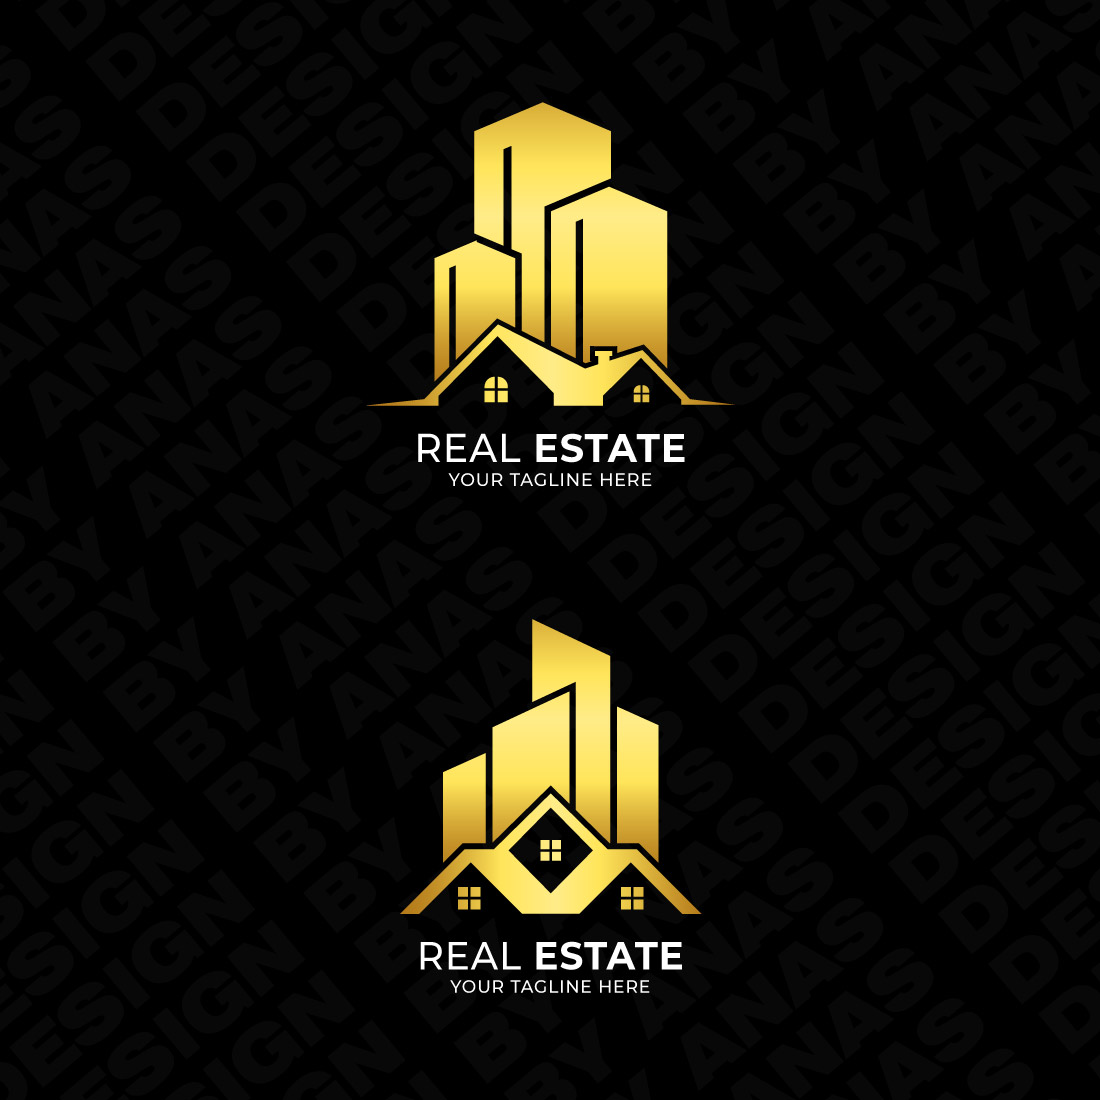 real estate 4 logos 3 933